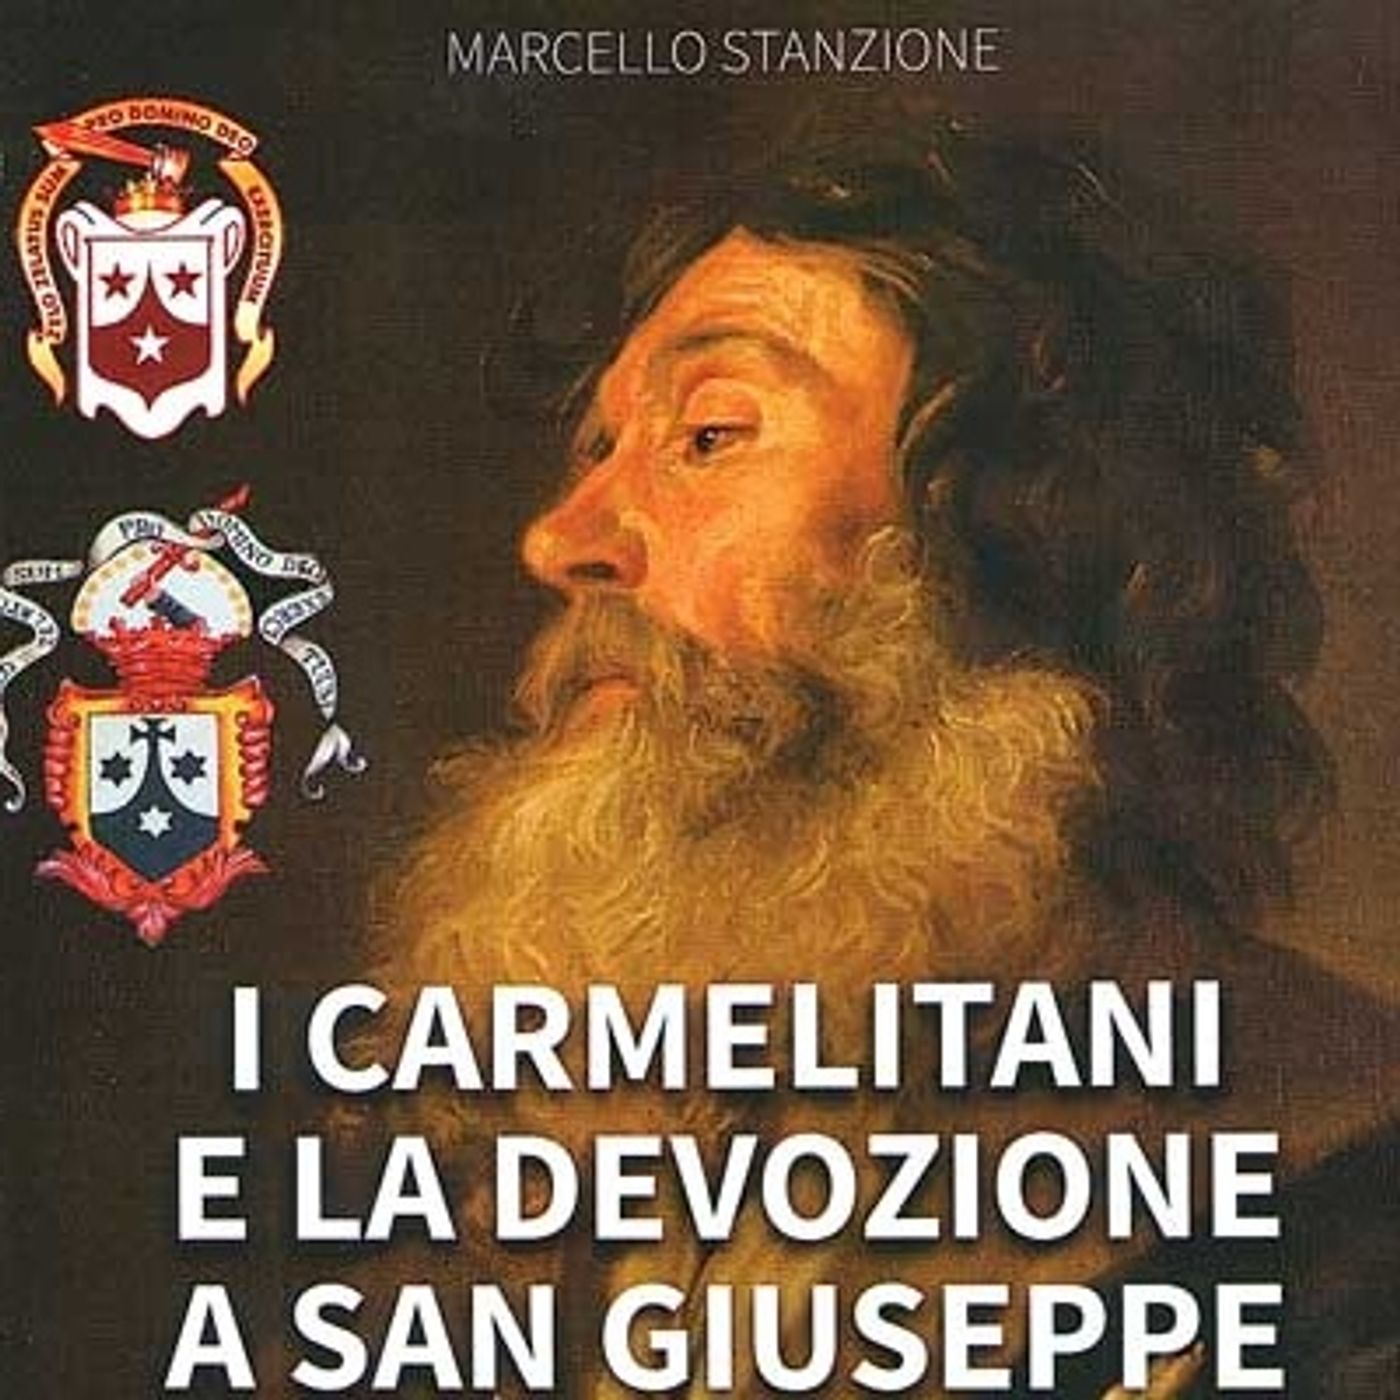 125 - I carmelitani e la devozione a san Giuseppe